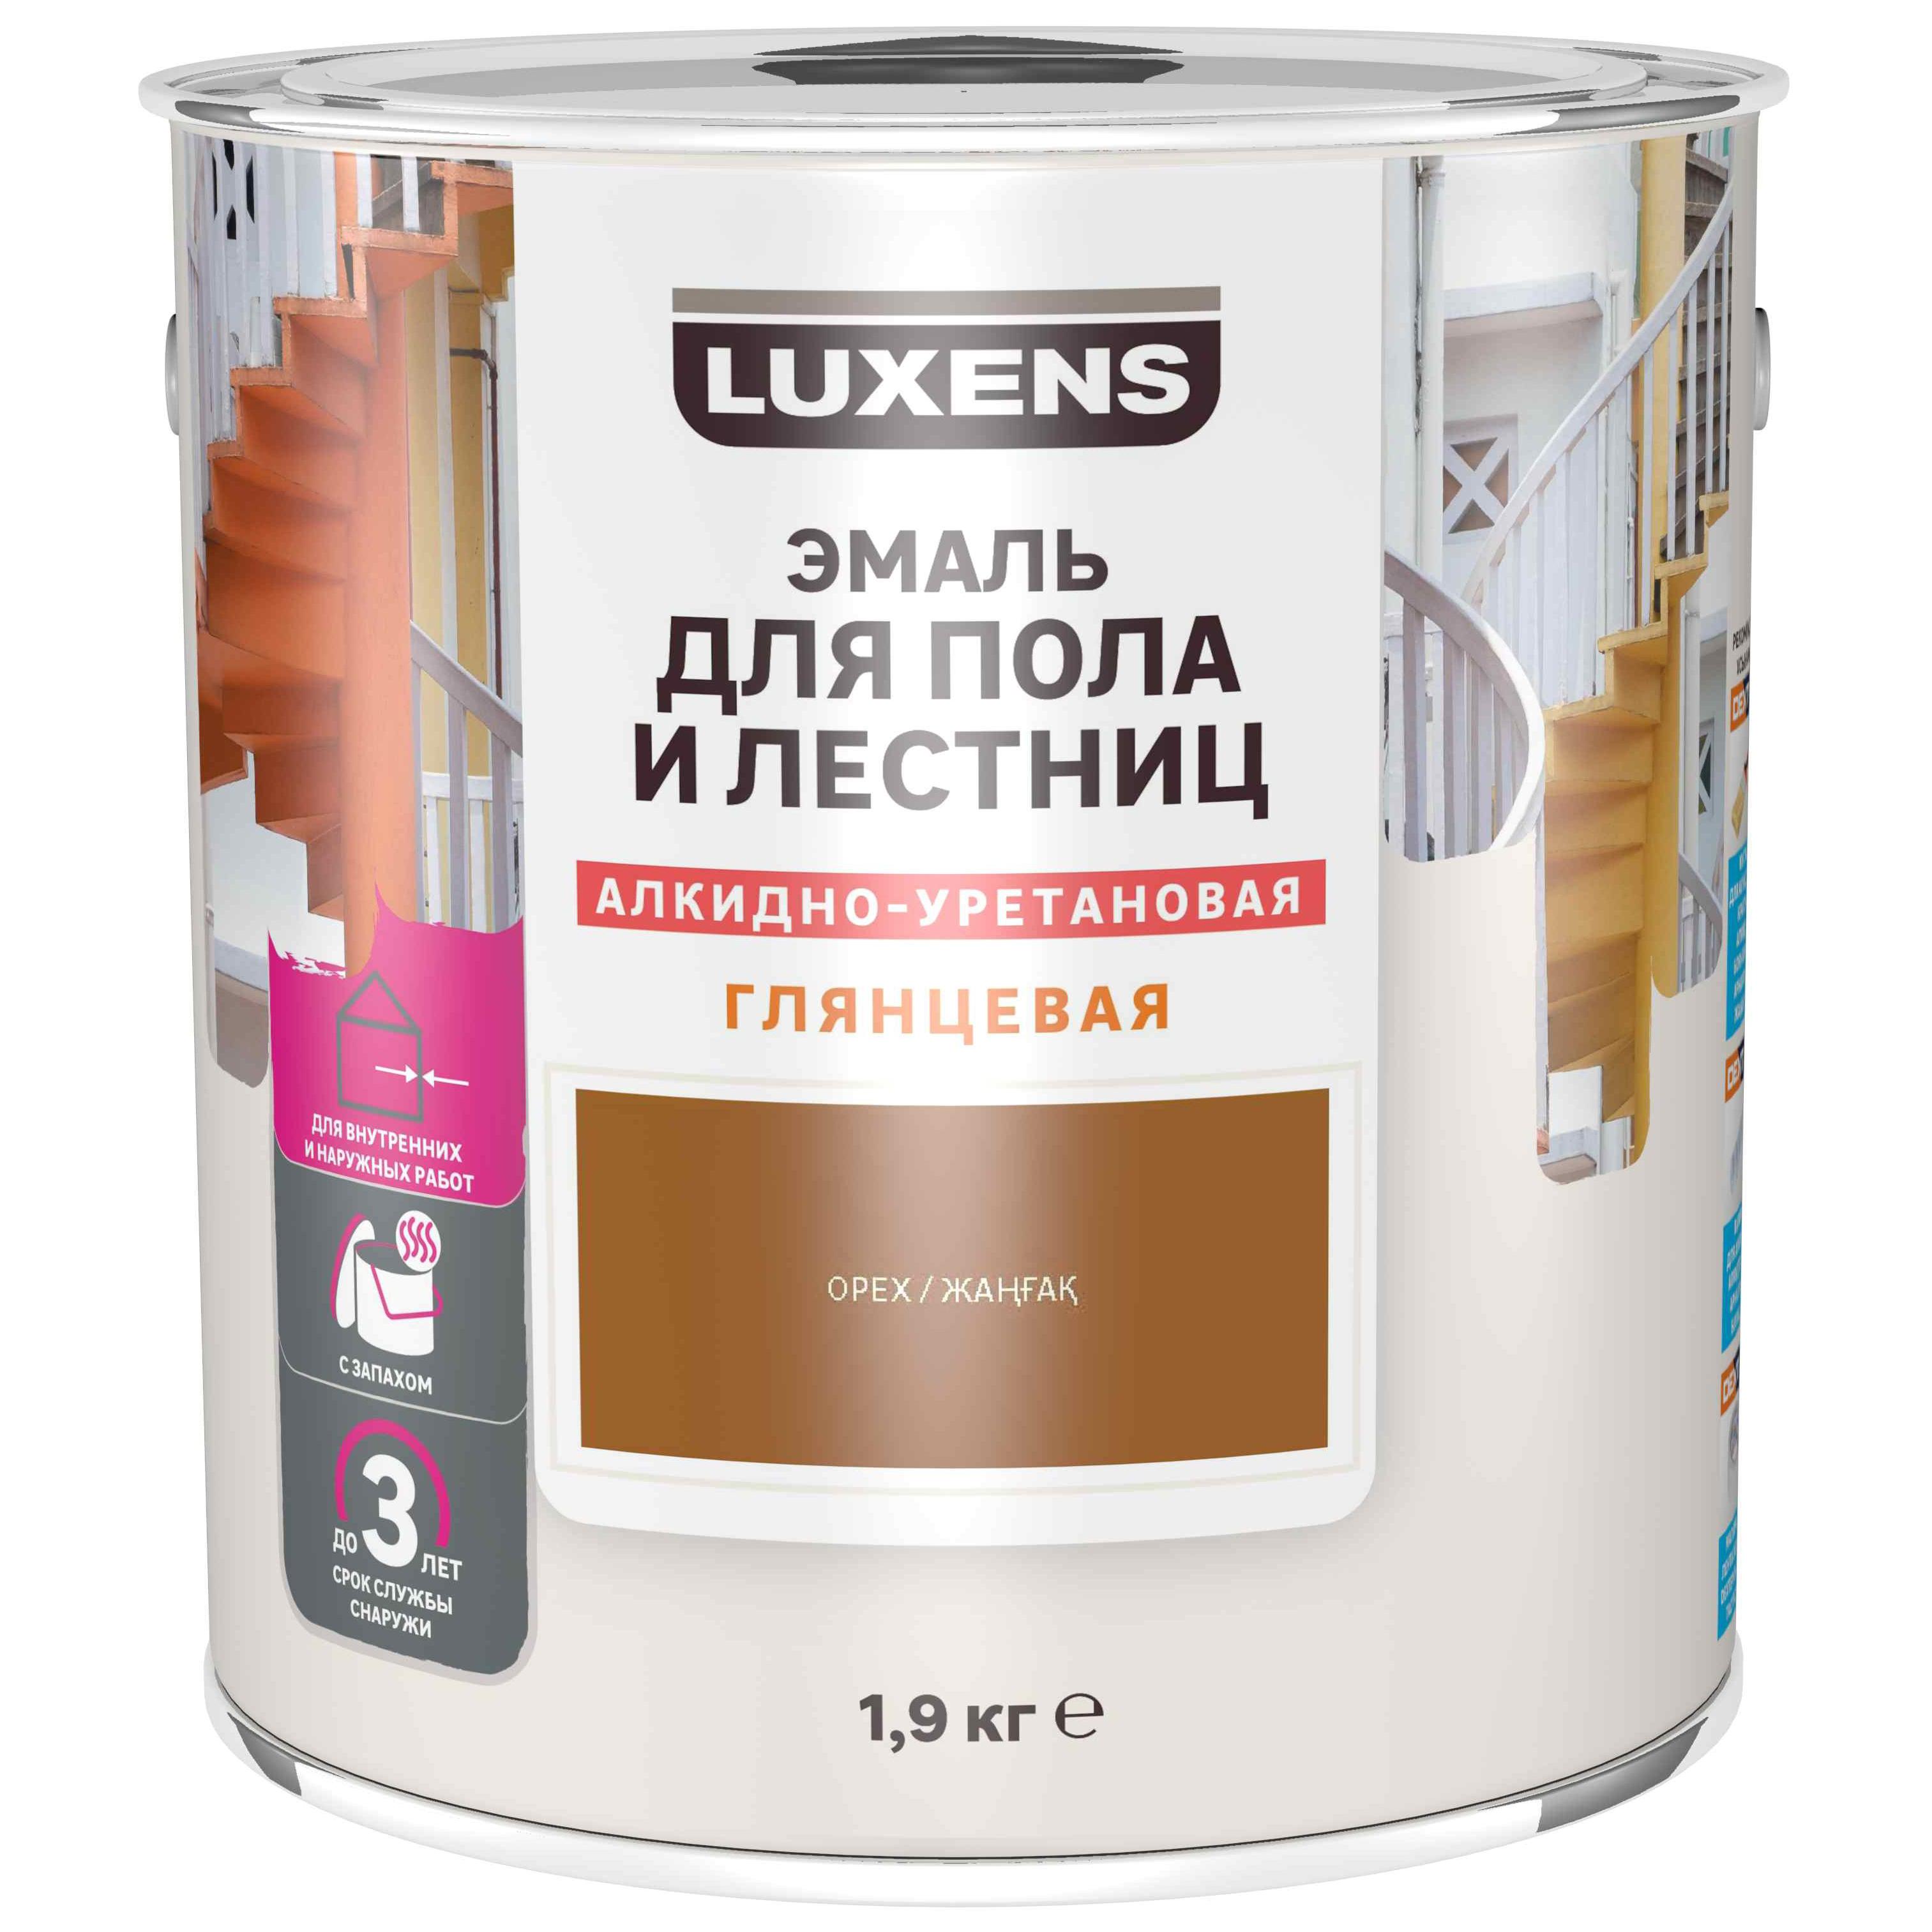  для пола и лестниц алкидно-уретановая Luxens цвет орех 1.9 кг .